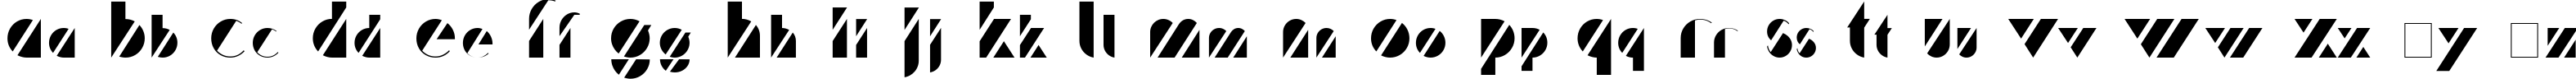 Пример написания английского алфавита шрифтом Treffi Normal